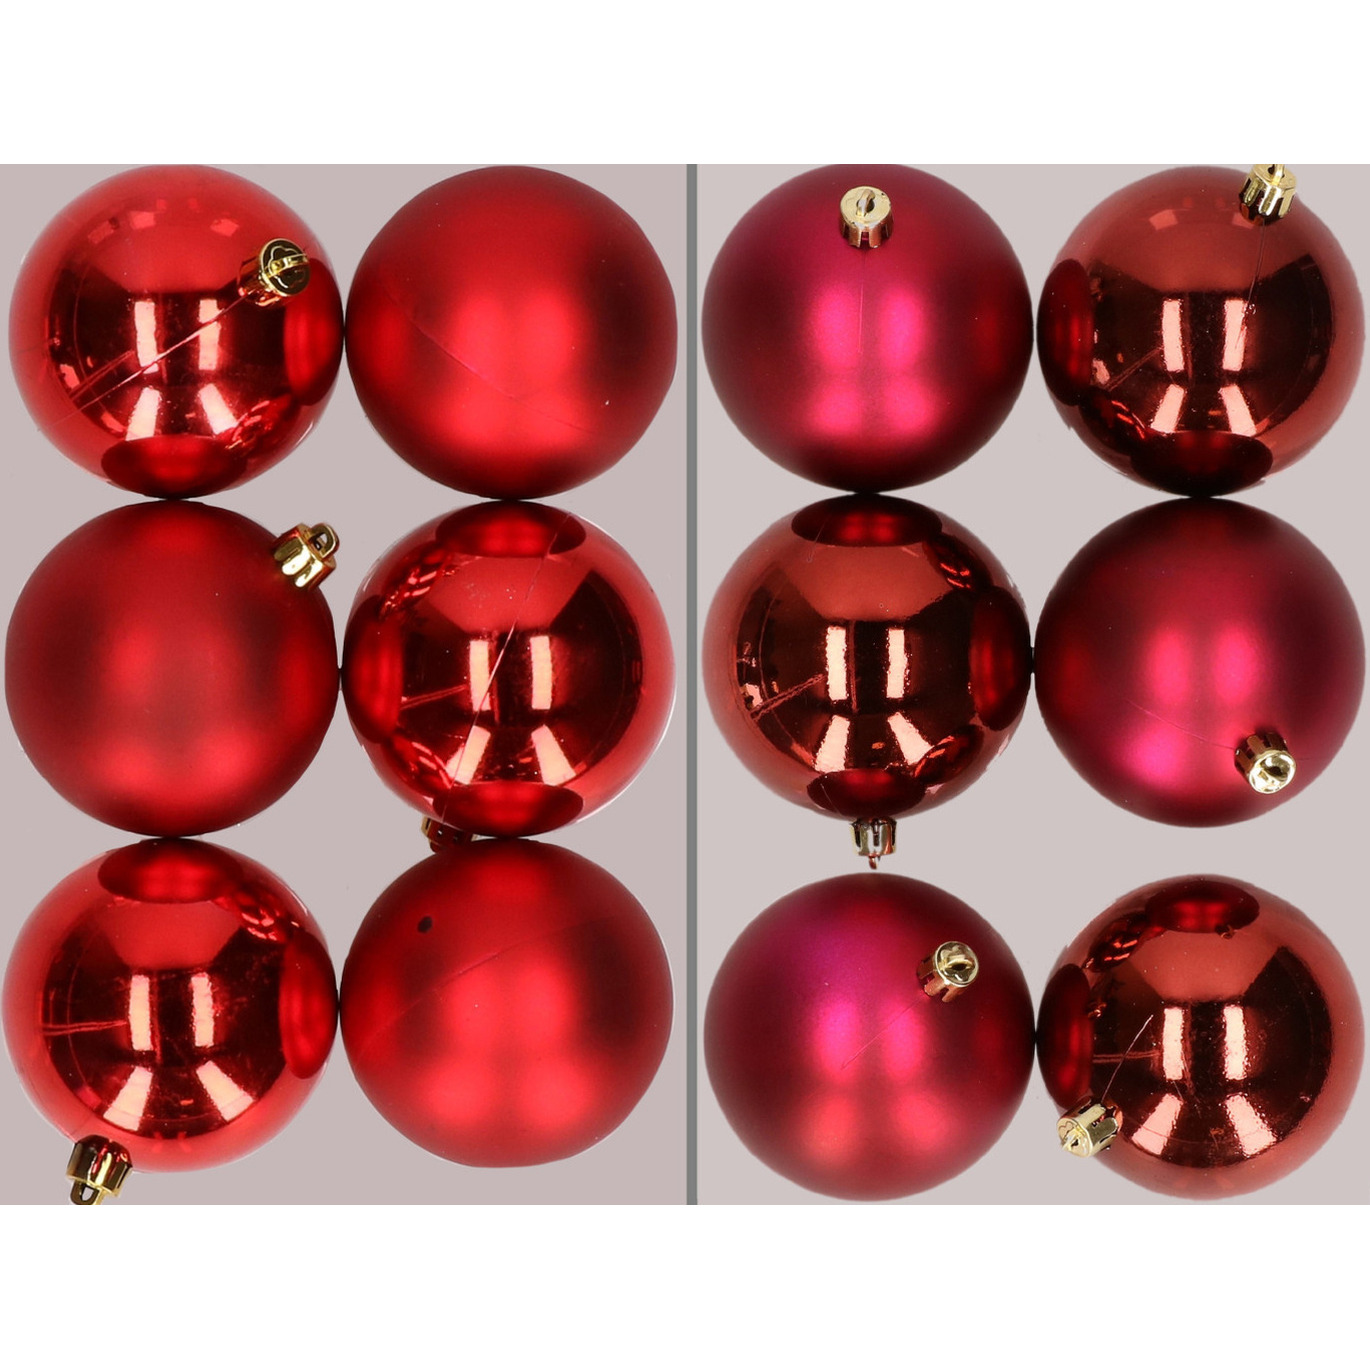 12x stuks kunststof kerstballen mix van rood en donkerrood 8 cm